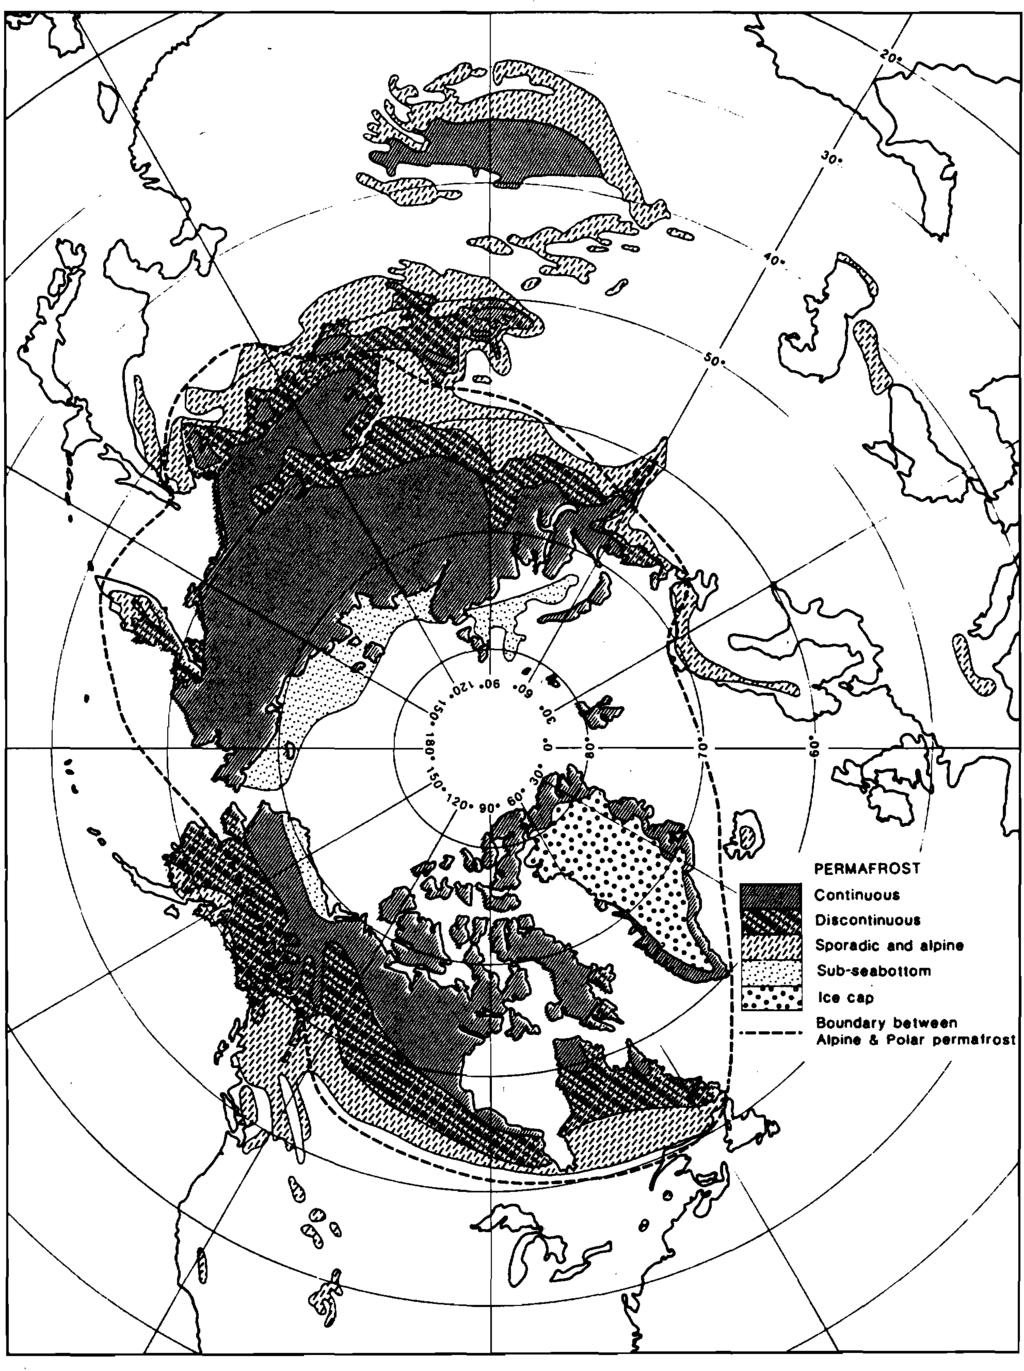 kelsen kan variere fra noen få millimeter til ca. 3 meter. På de laveste breddegradene der permafrost er observert opptrer den sporadisk, ofte i høyfjellet, i et generett frostfritt landskap.